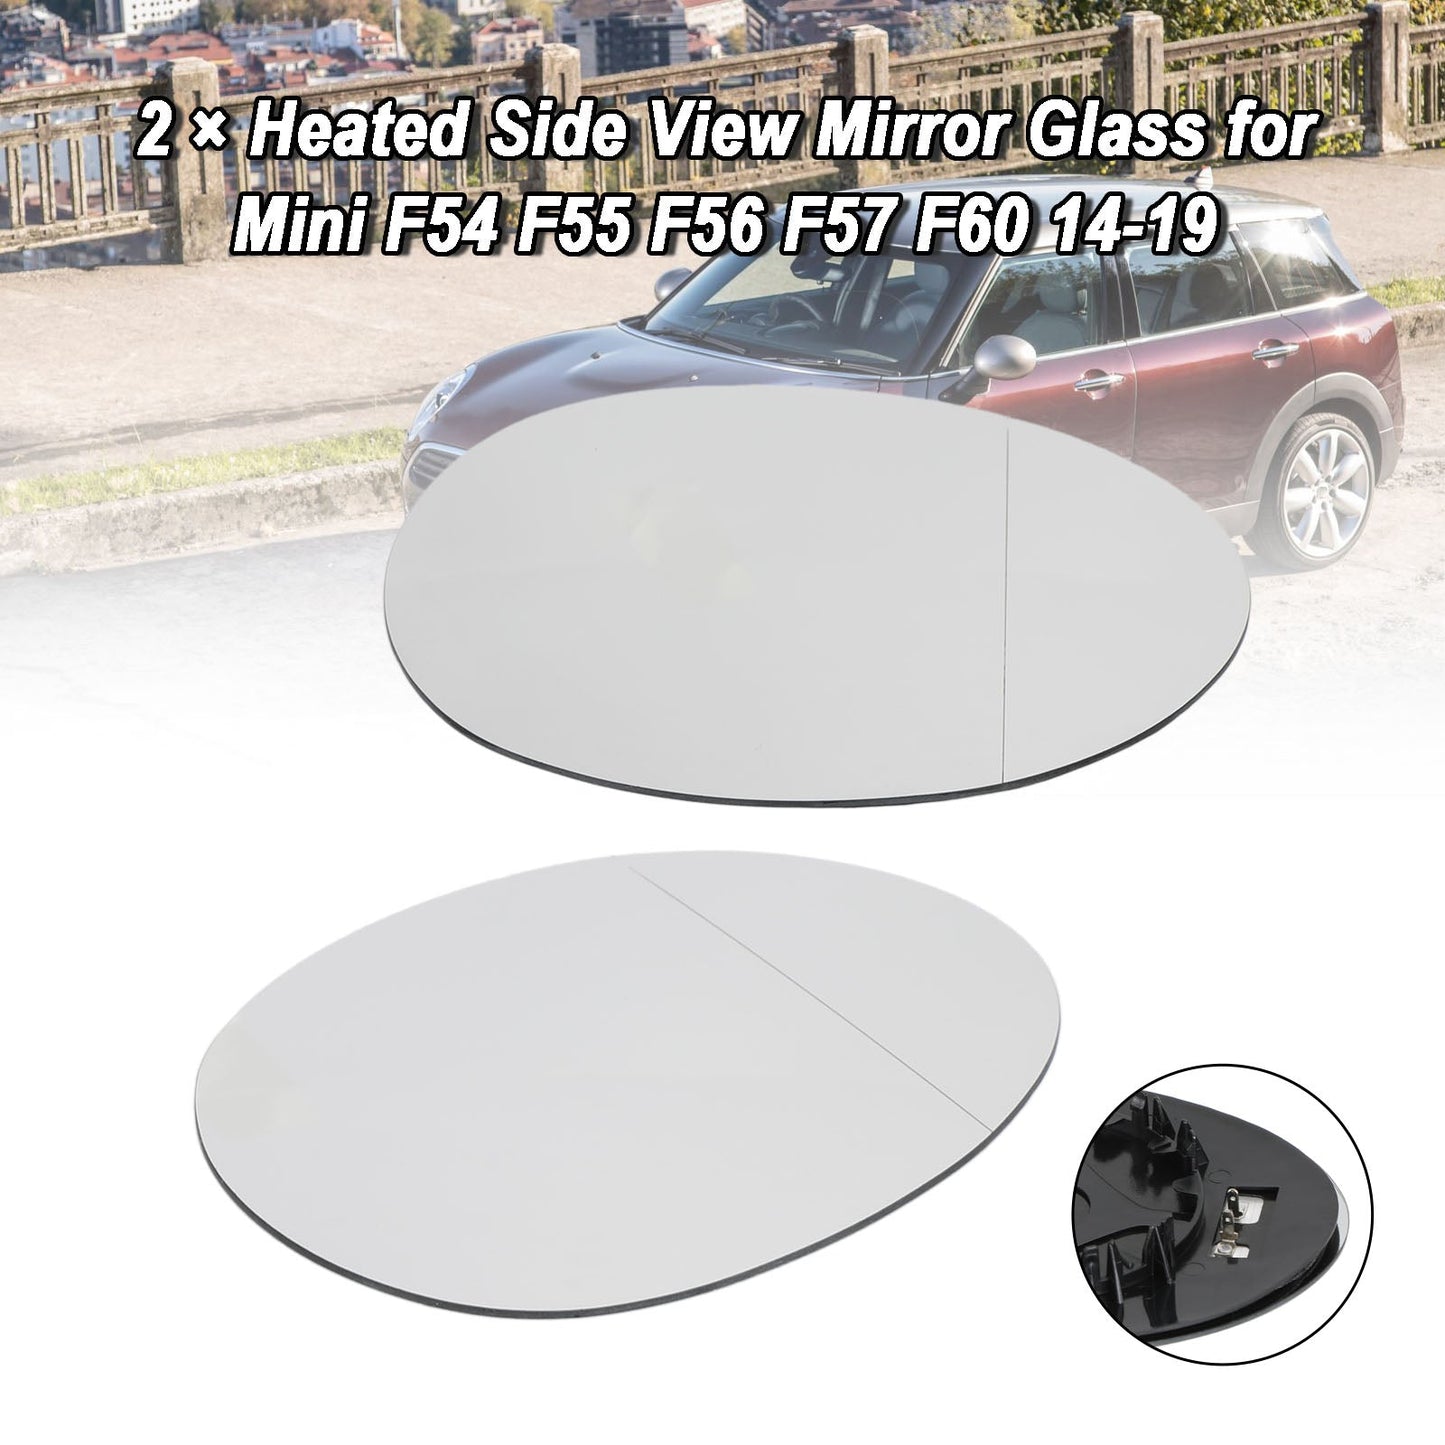 2014-2019 Mini F54 F55 F56 F57 F60 2 × Heated Side View Mirror Glass